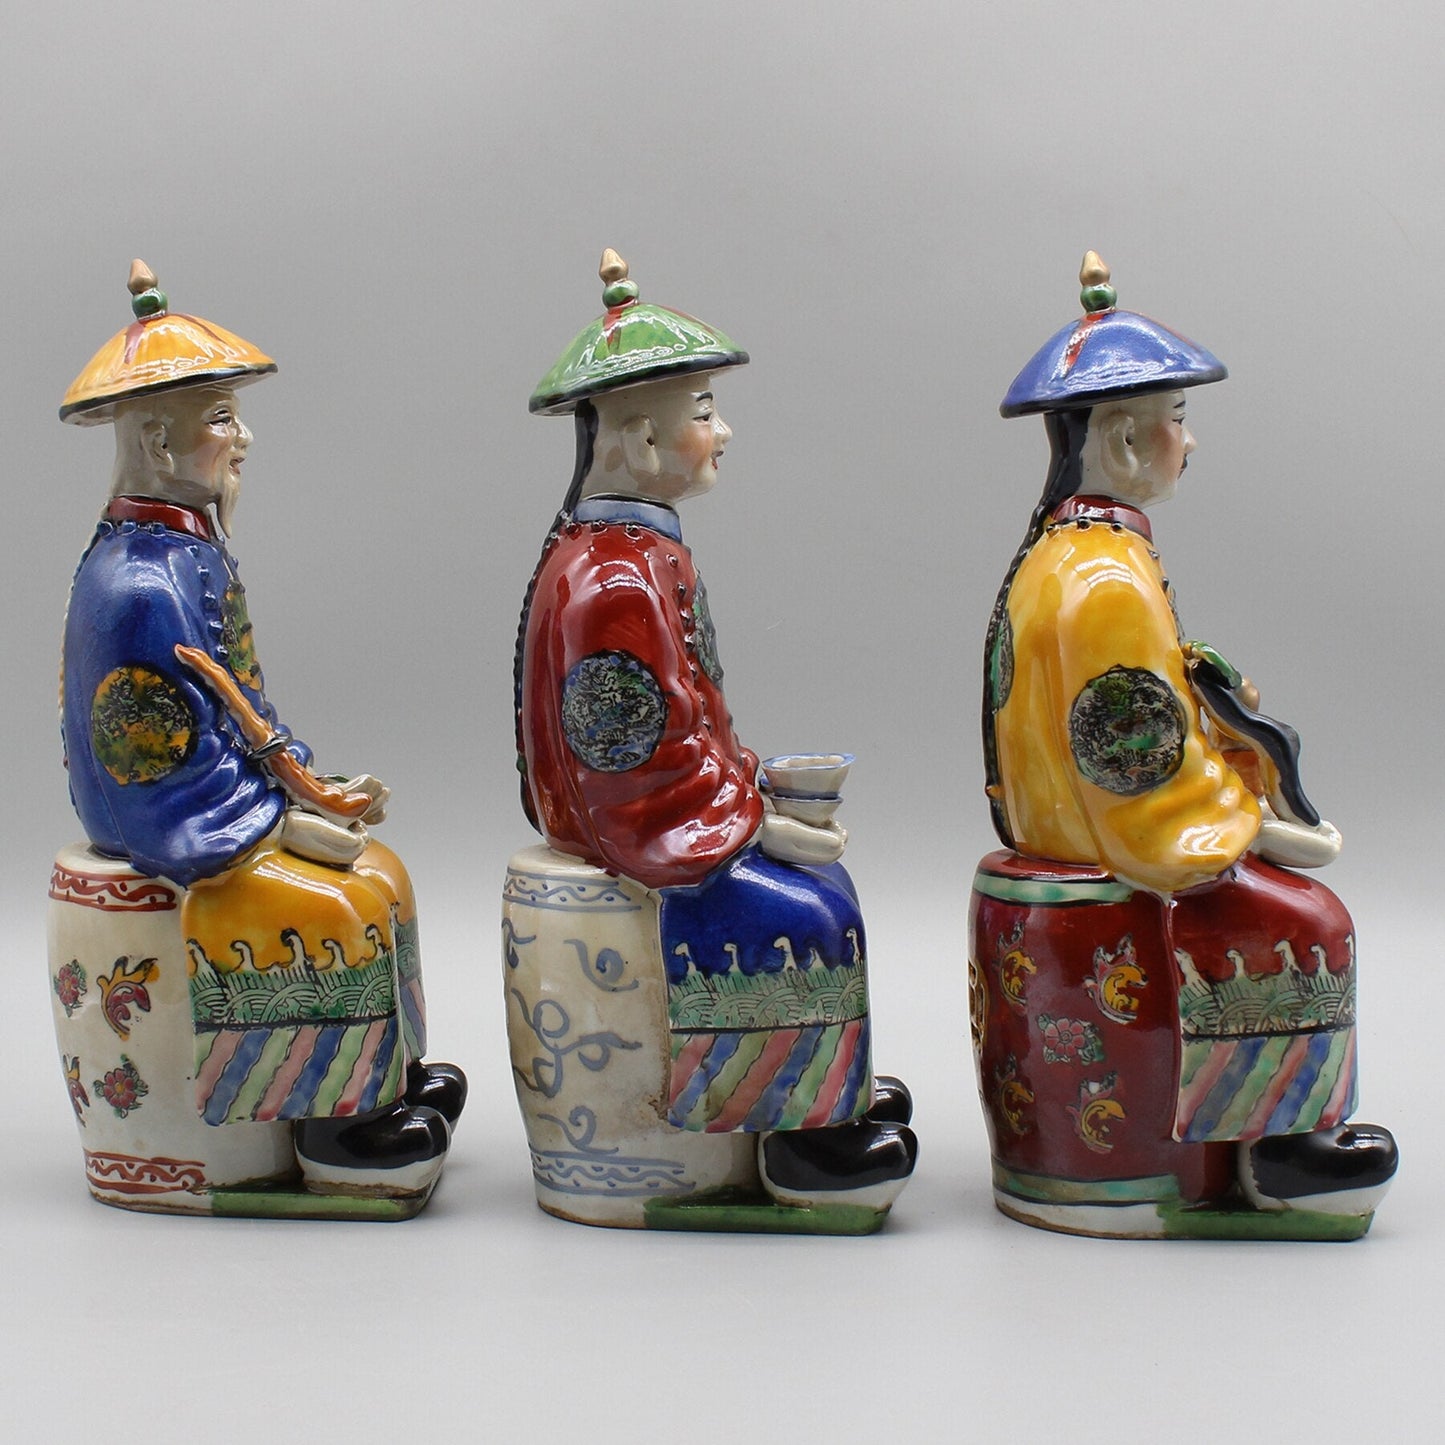 Keramisk kinesisk kejserstatue, håndmalet keramisk figur, farverigt porcelæn, boligindretning